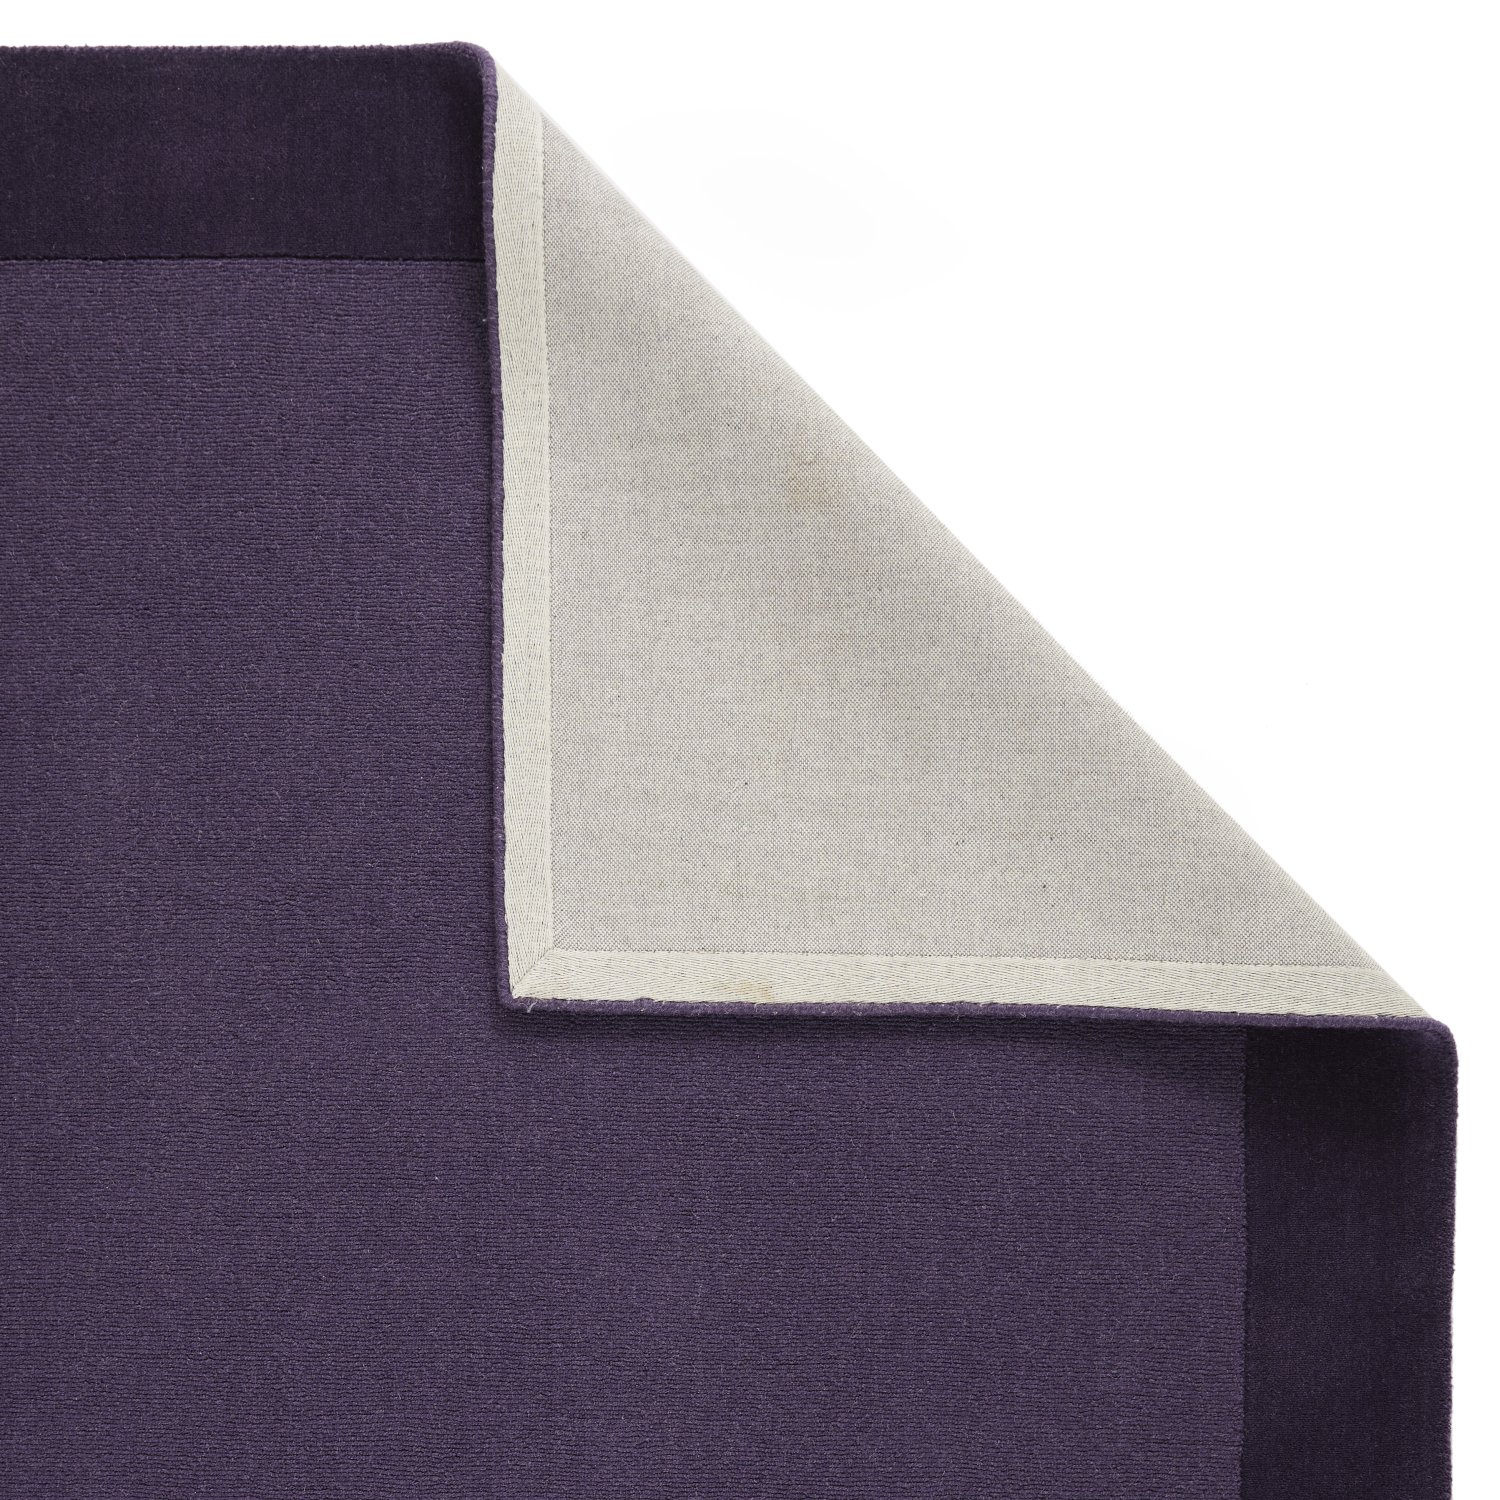 Colours Bordered Wool Rug - Purple